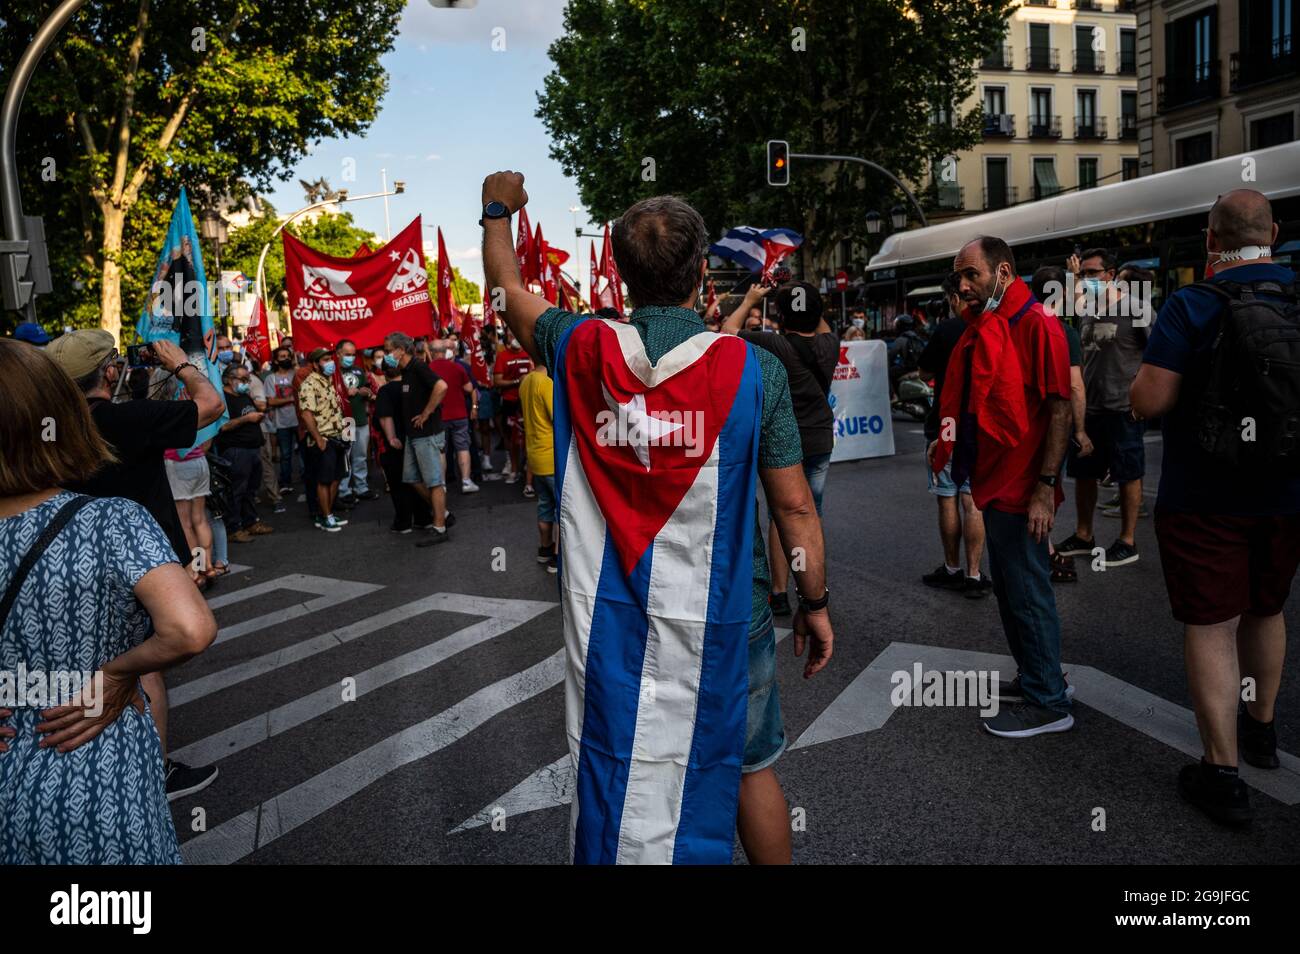 Madrid, Spanien. Juli 2021. Demonstranten mit Fahnen und Plakaten während einer Demonstration gegen das US-Wirtschaftsembargo gegen Kuba, zeitgleich mit dem 26. Juli, dem Tag, an dem die kubanische Revolution 1953, vor 68 Jahren, begann. Quelle: Marcos del Mazo/Alamy Live News Stockfoto